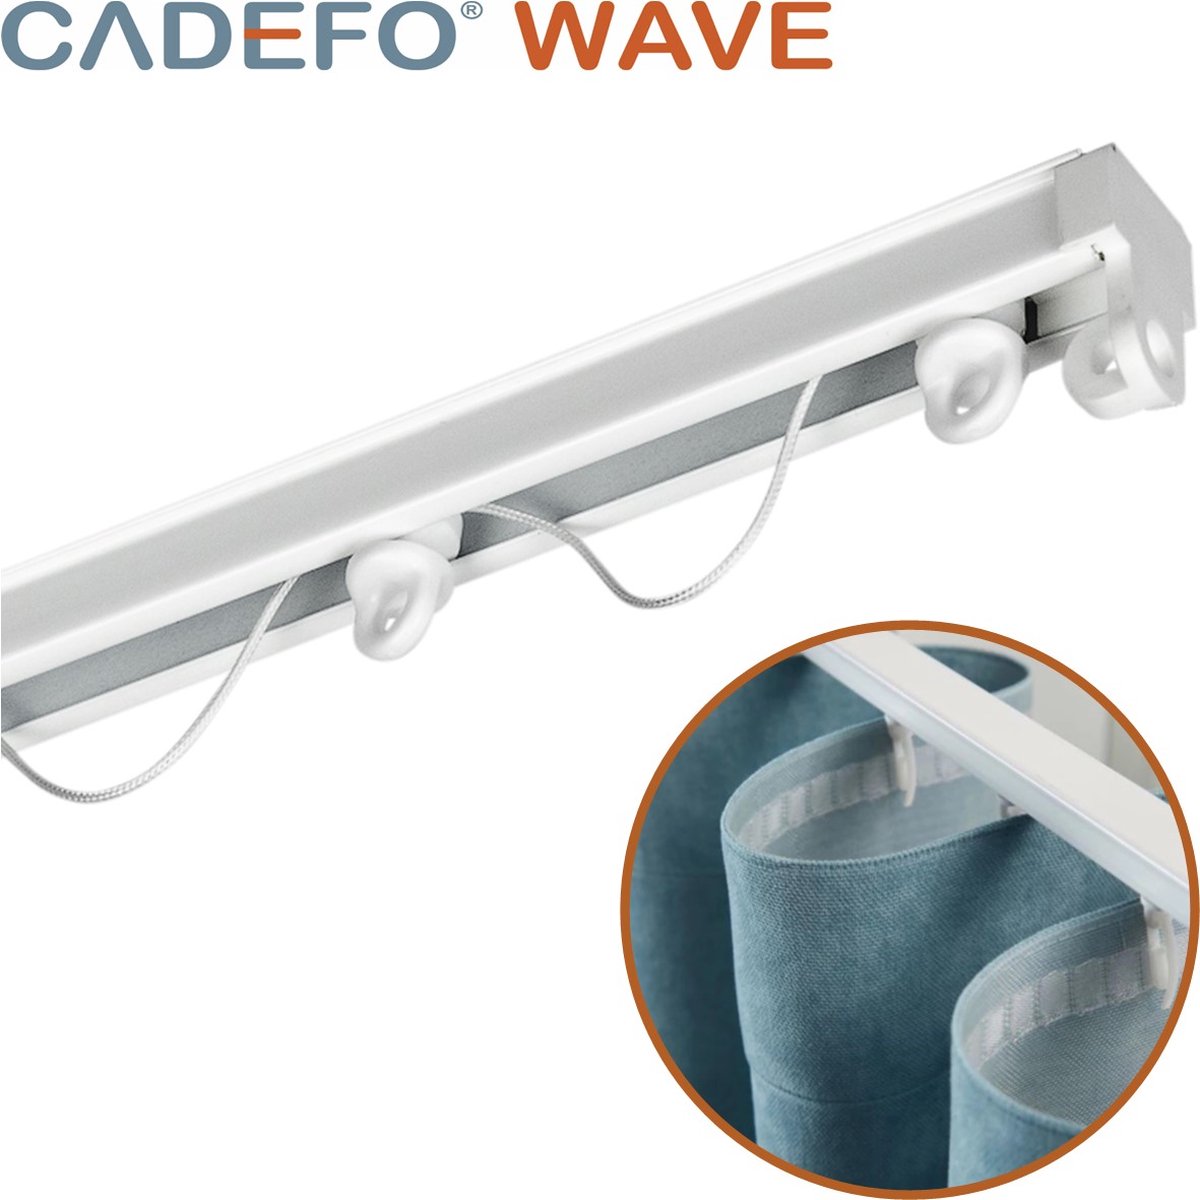 CADEFO WAVE (451 - 500 cm) Gordijnrails - Compleet op maat! - UIT 1 STUK - Leverbaar tot 6 meter - Plafondbevestiging - Lengte 494 cm